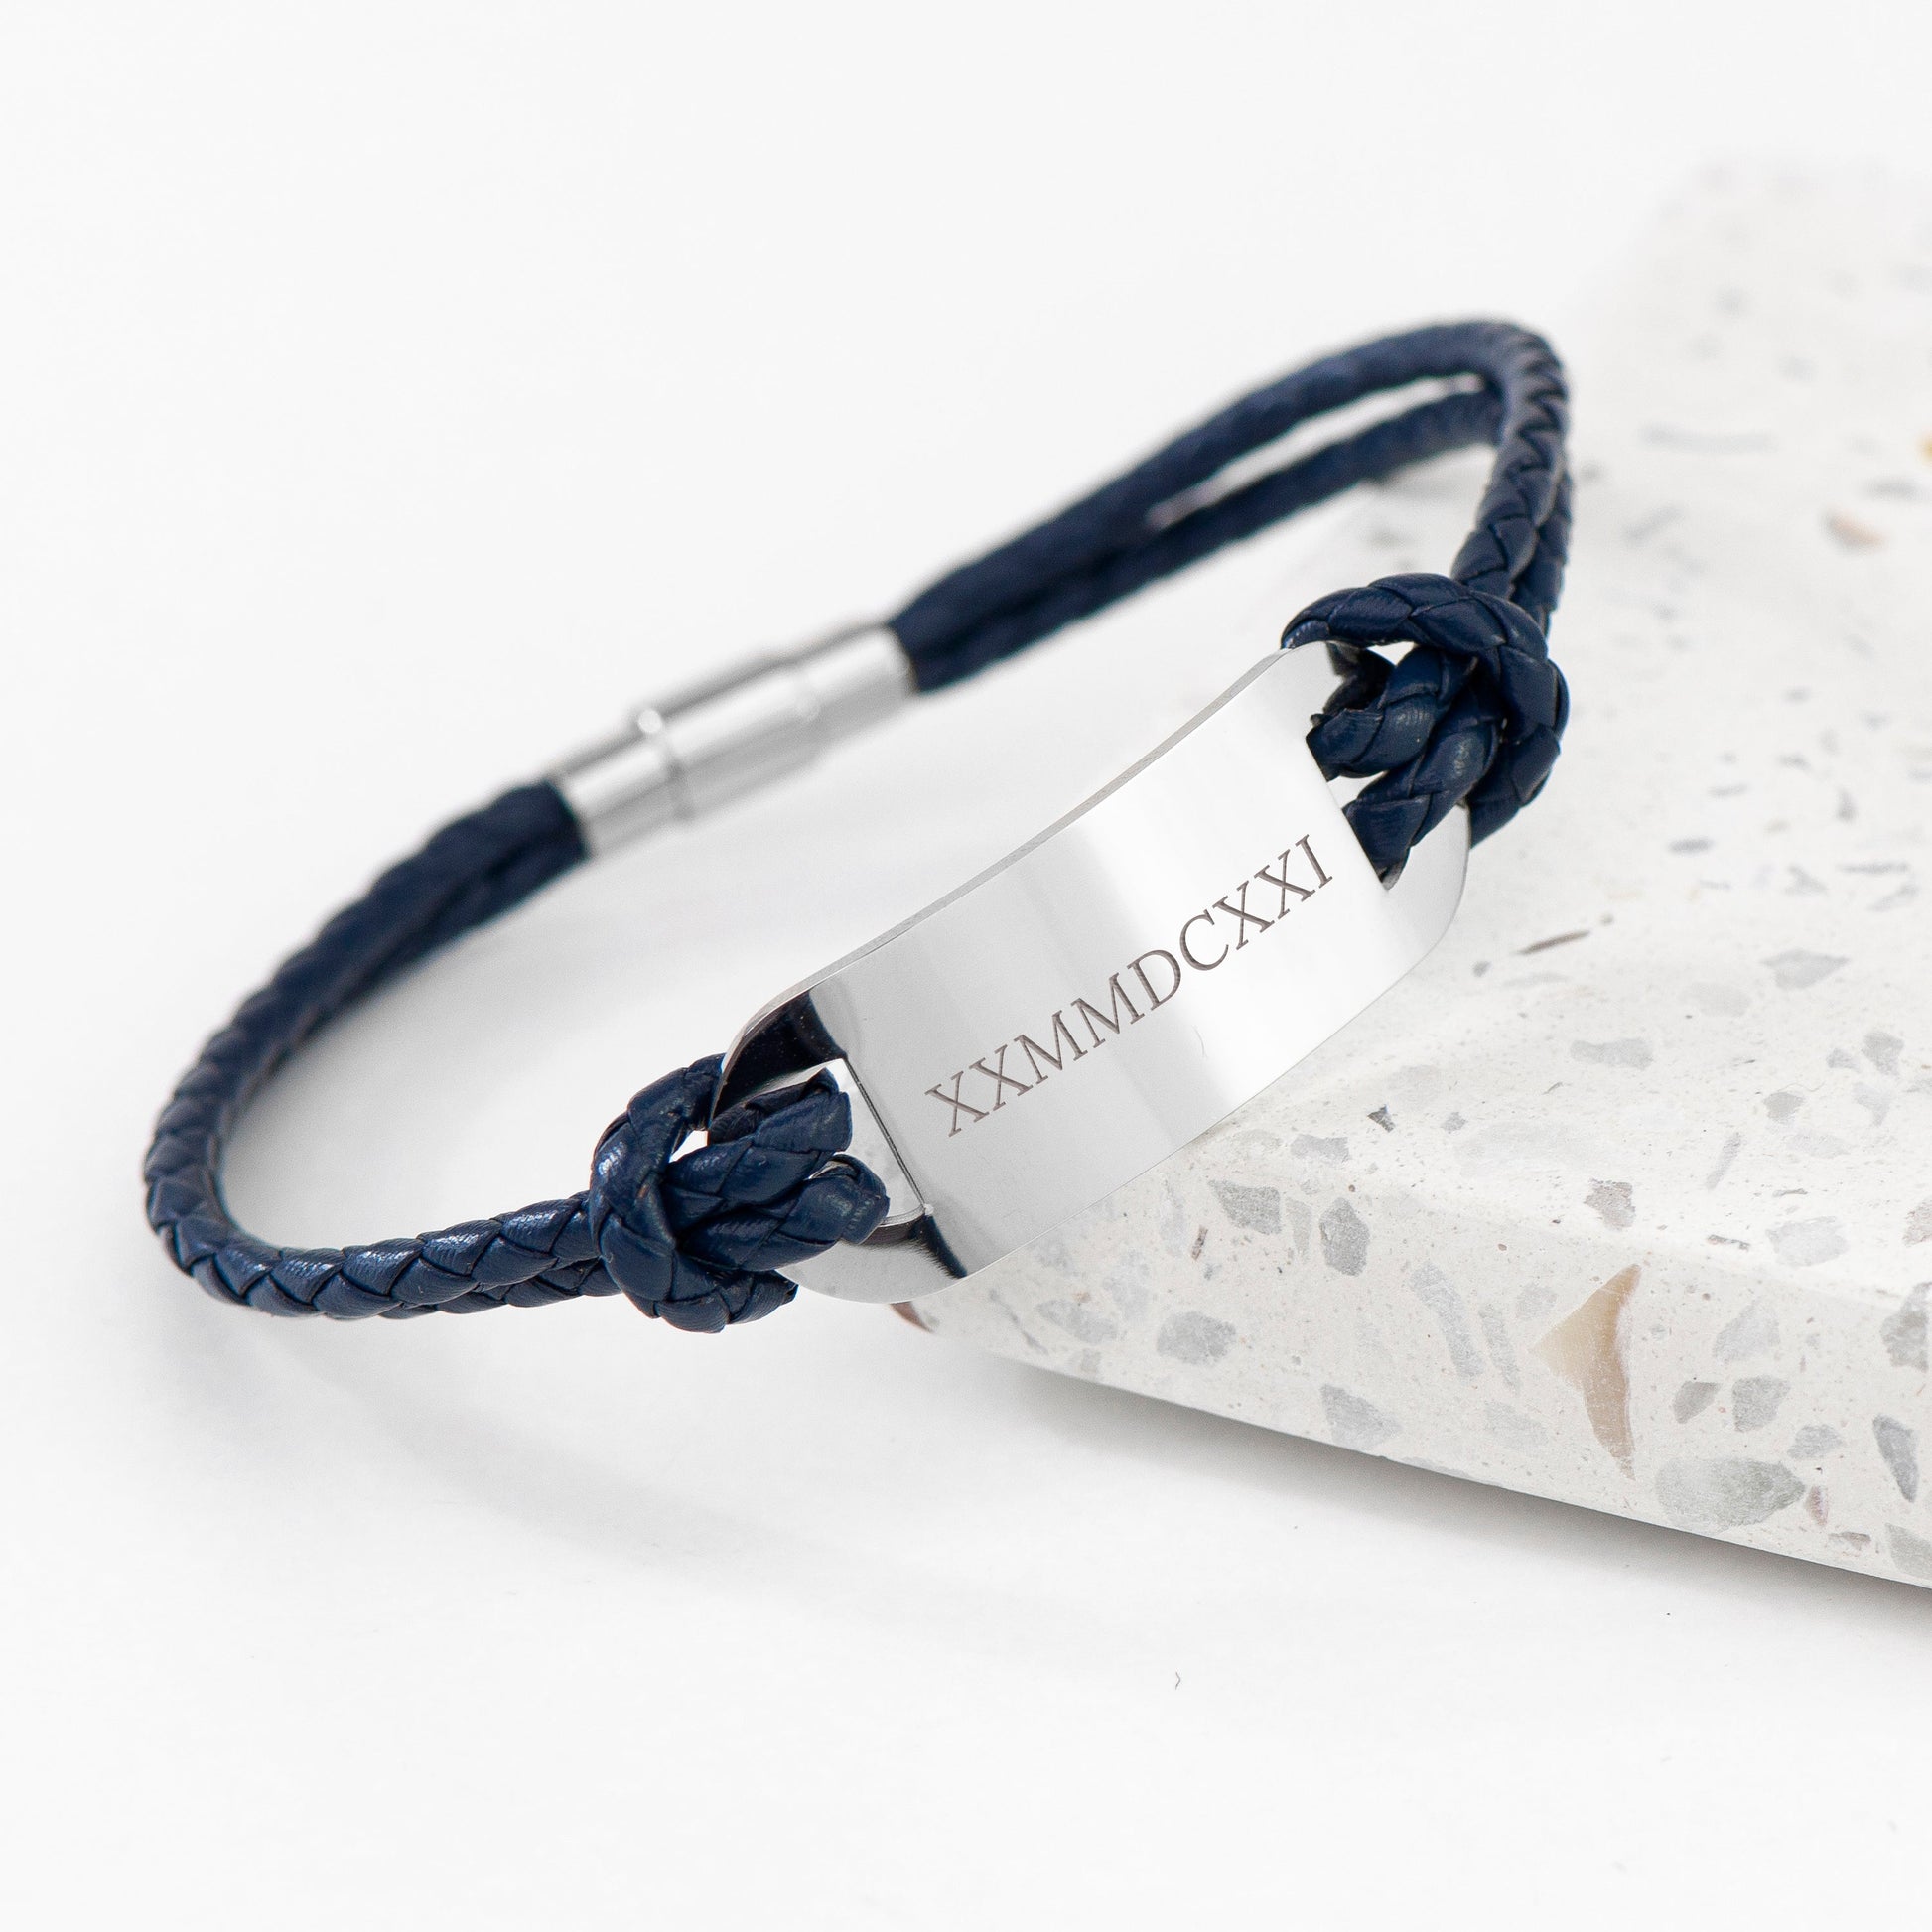 Personalized Men's Bracelets - Personalized Men's Roman Numerals Statement Leather Bracelet 